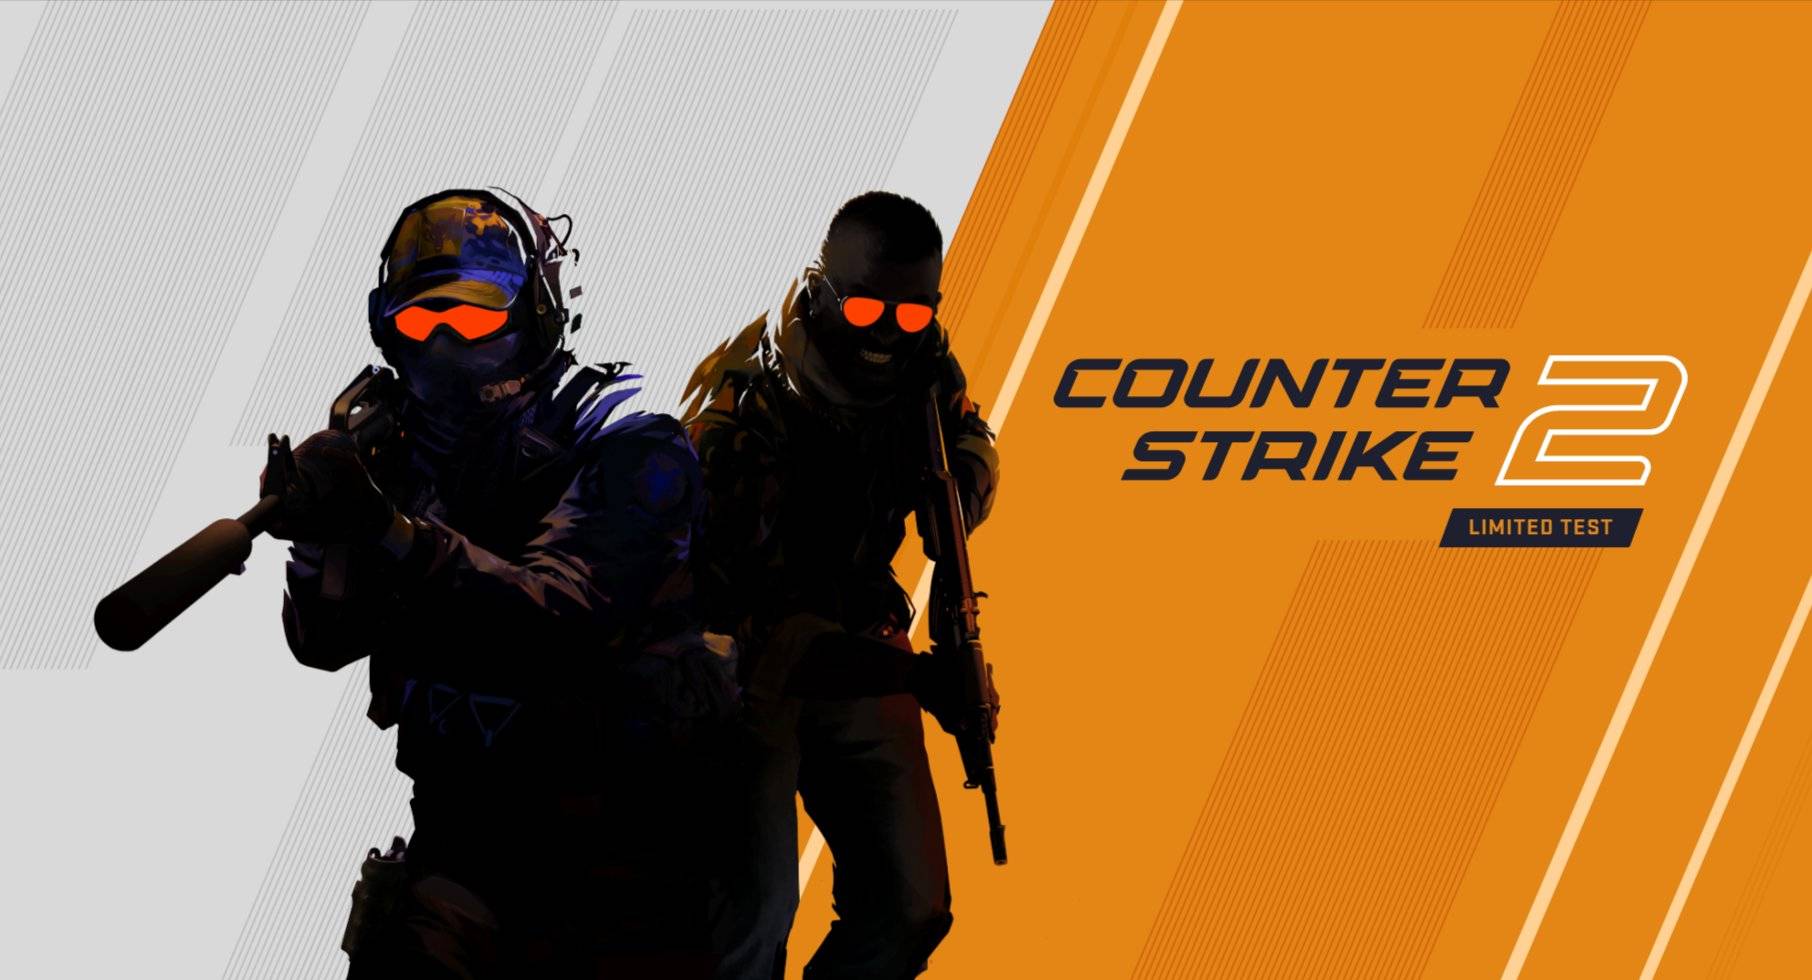 Counter-Strike 2 Best Settings For Highest FPS